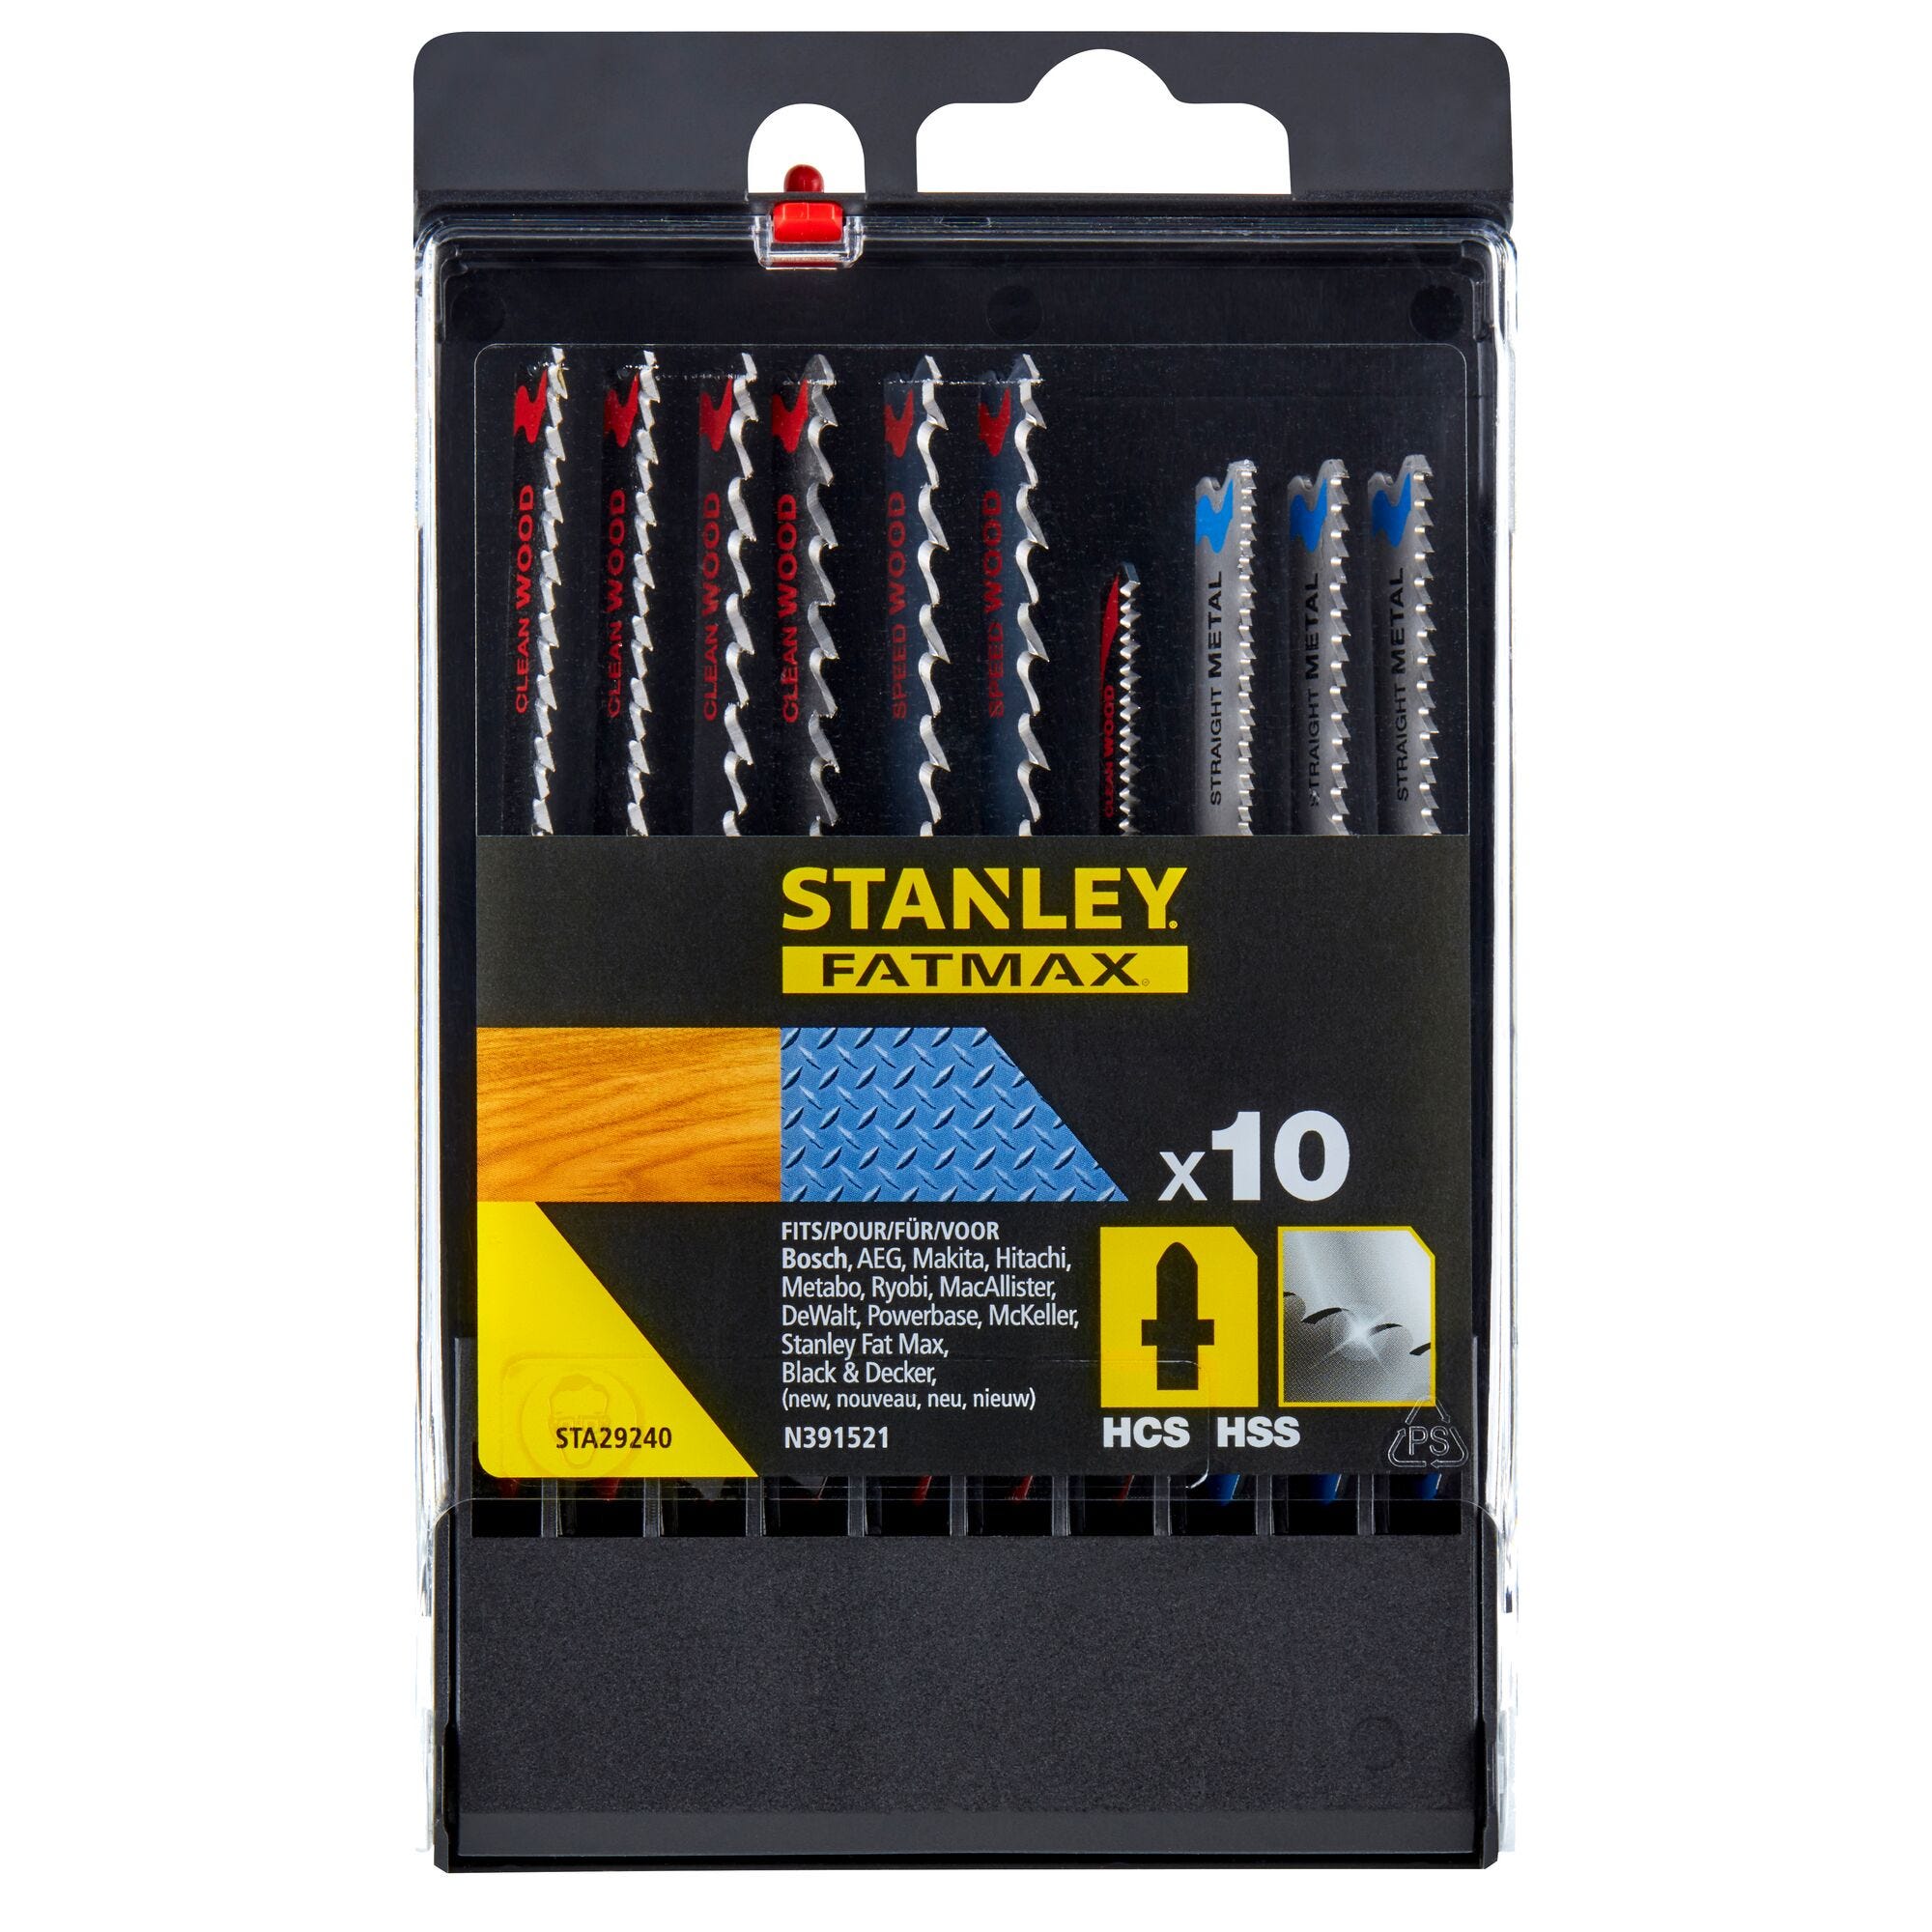 Stanley Coffret de 10 lames de scie sauteuse : 7 lames bois HCS et 3 lames métal HSS. Attache en T STA29240-XJ 1